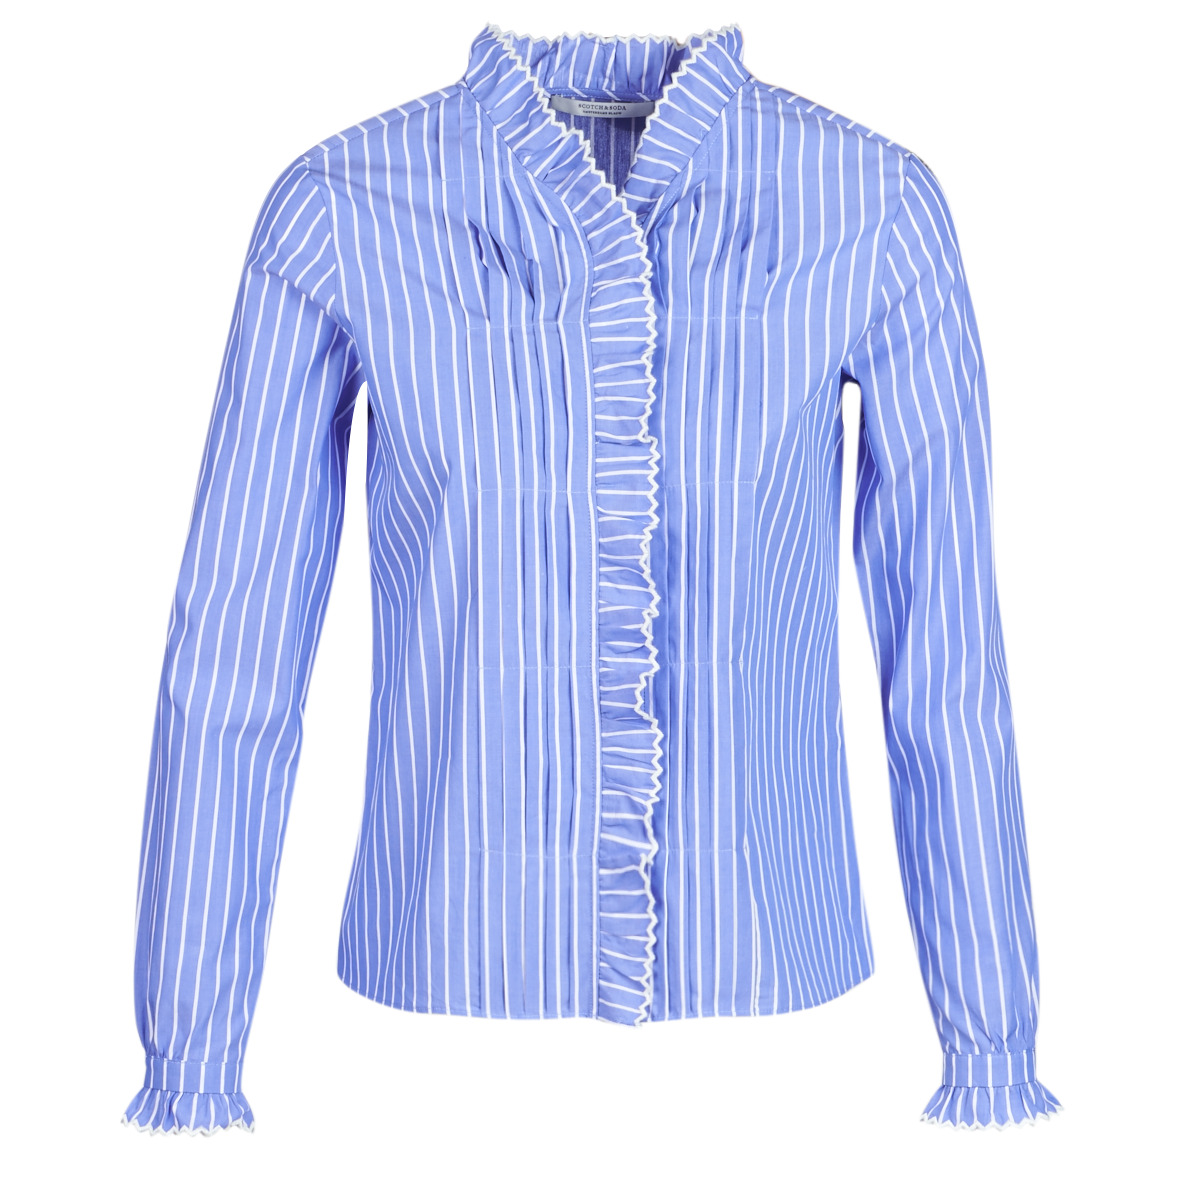 衣服 女士 衬衣/长袖衬衫 Maison Scotch LONG SLEEVES SHIRT 蓝色 / 米色